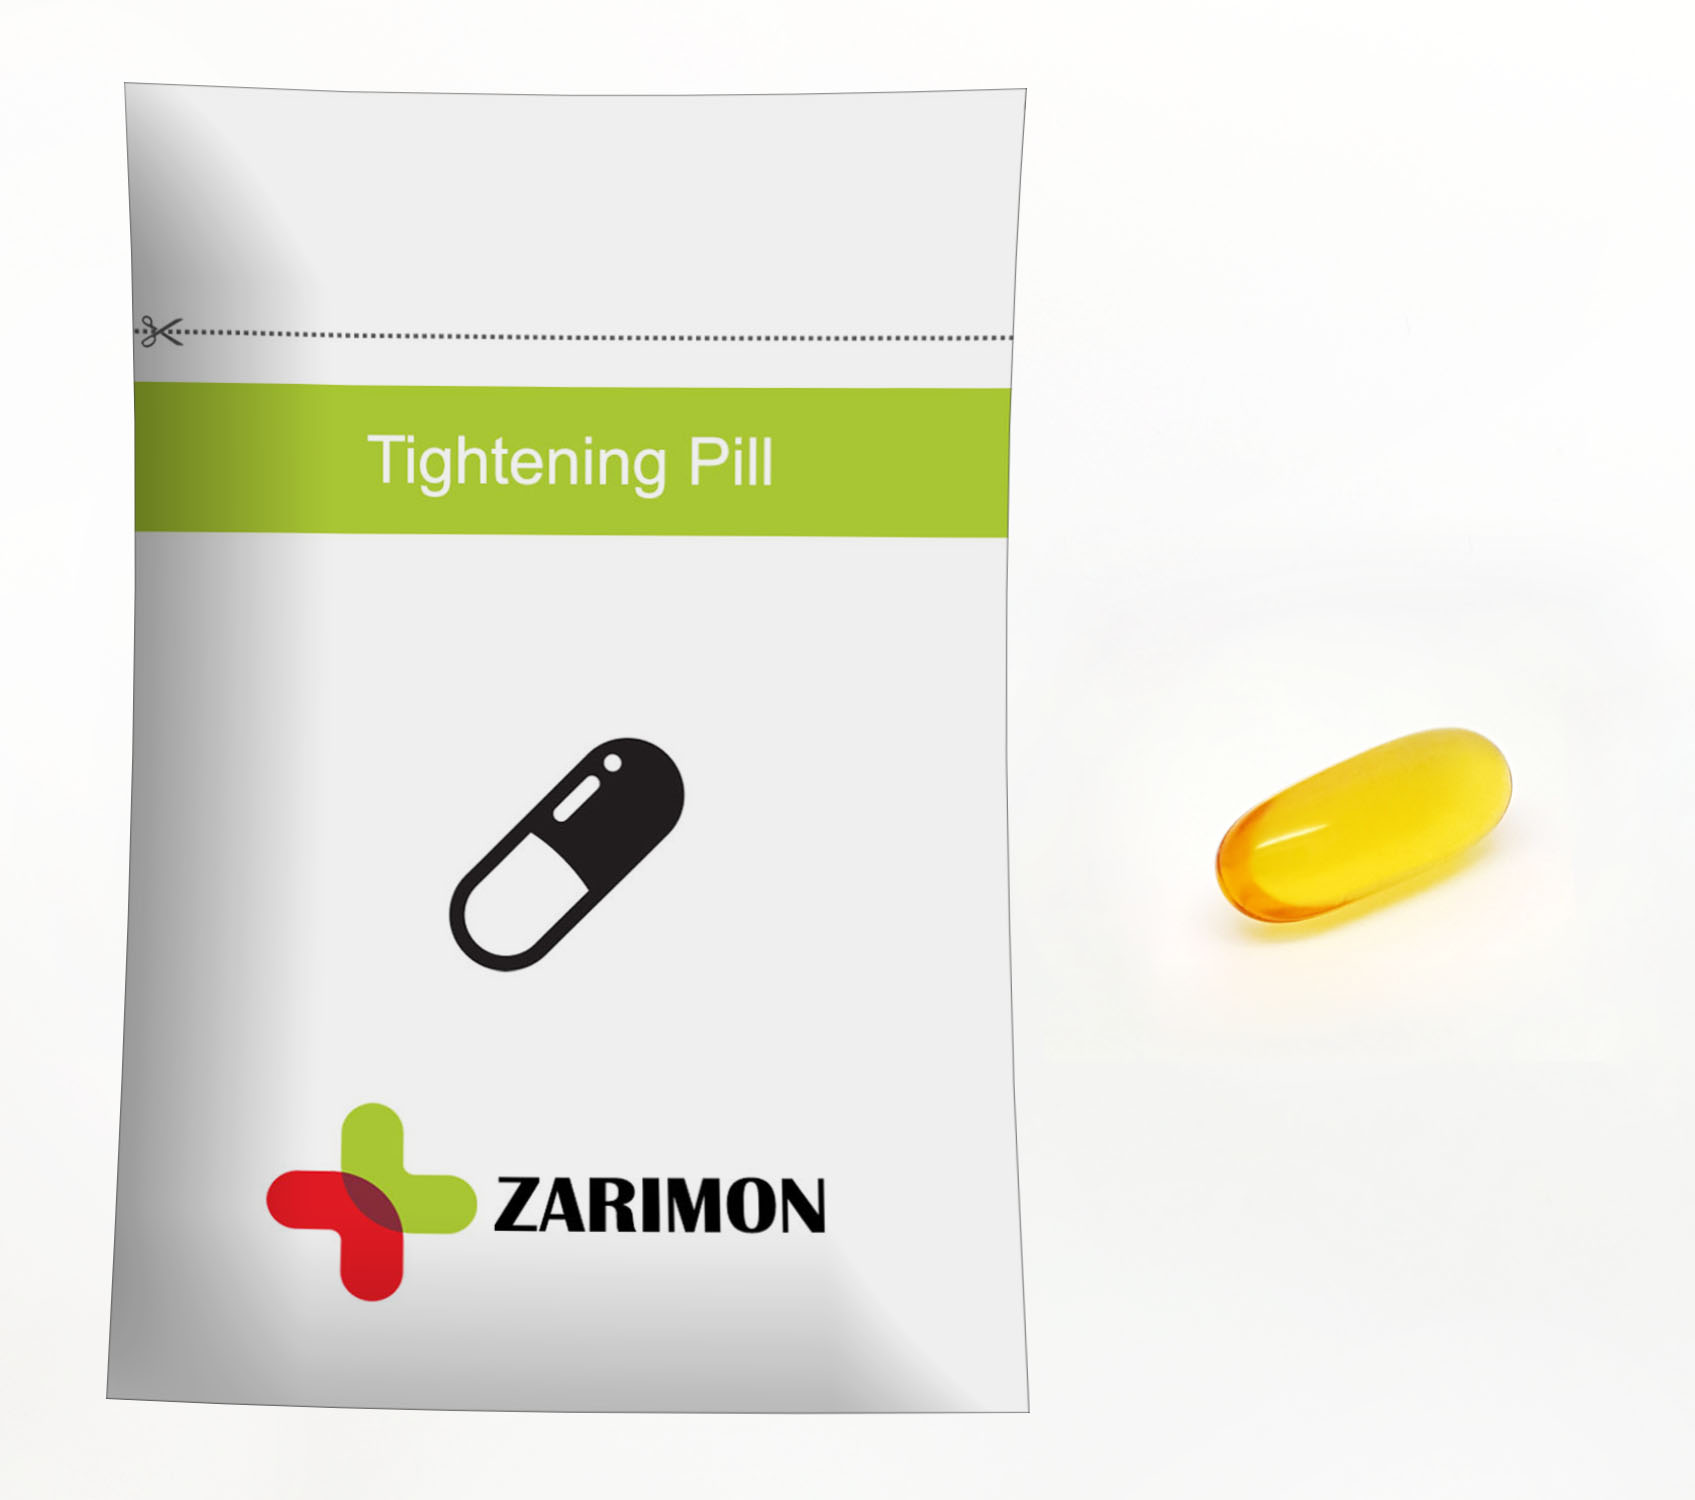 tightening pill (2017_08_14 12_33_10 UTC)